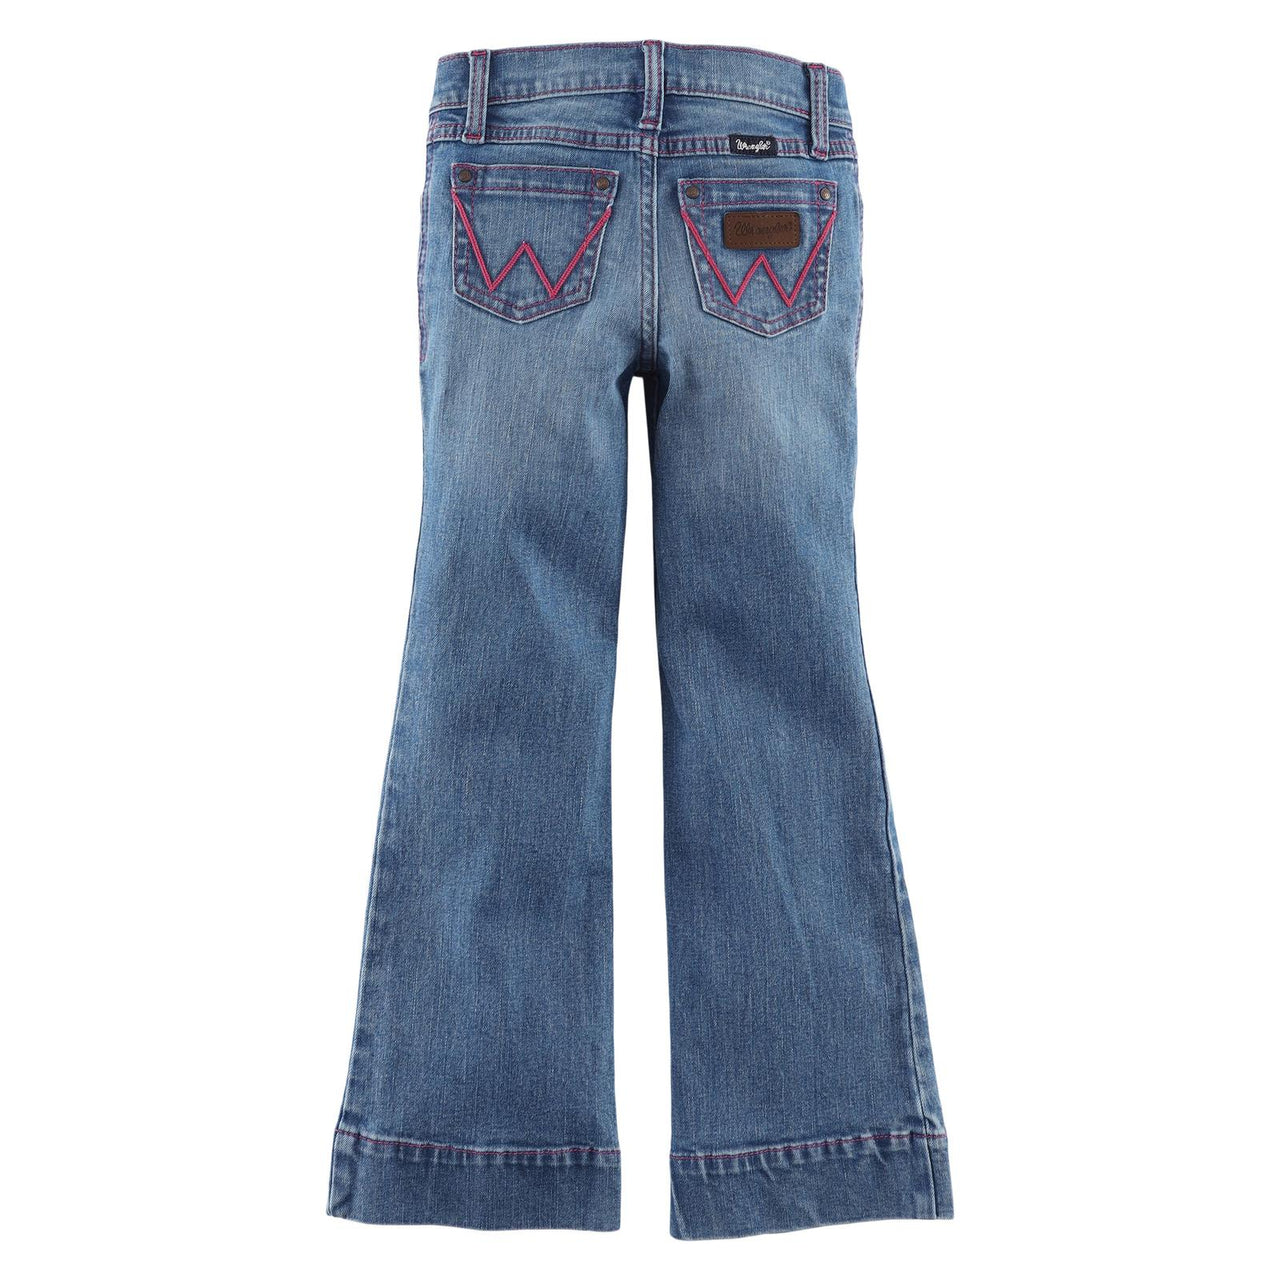 Wrangler Girl's Retro Trouser Jeans - Valerie